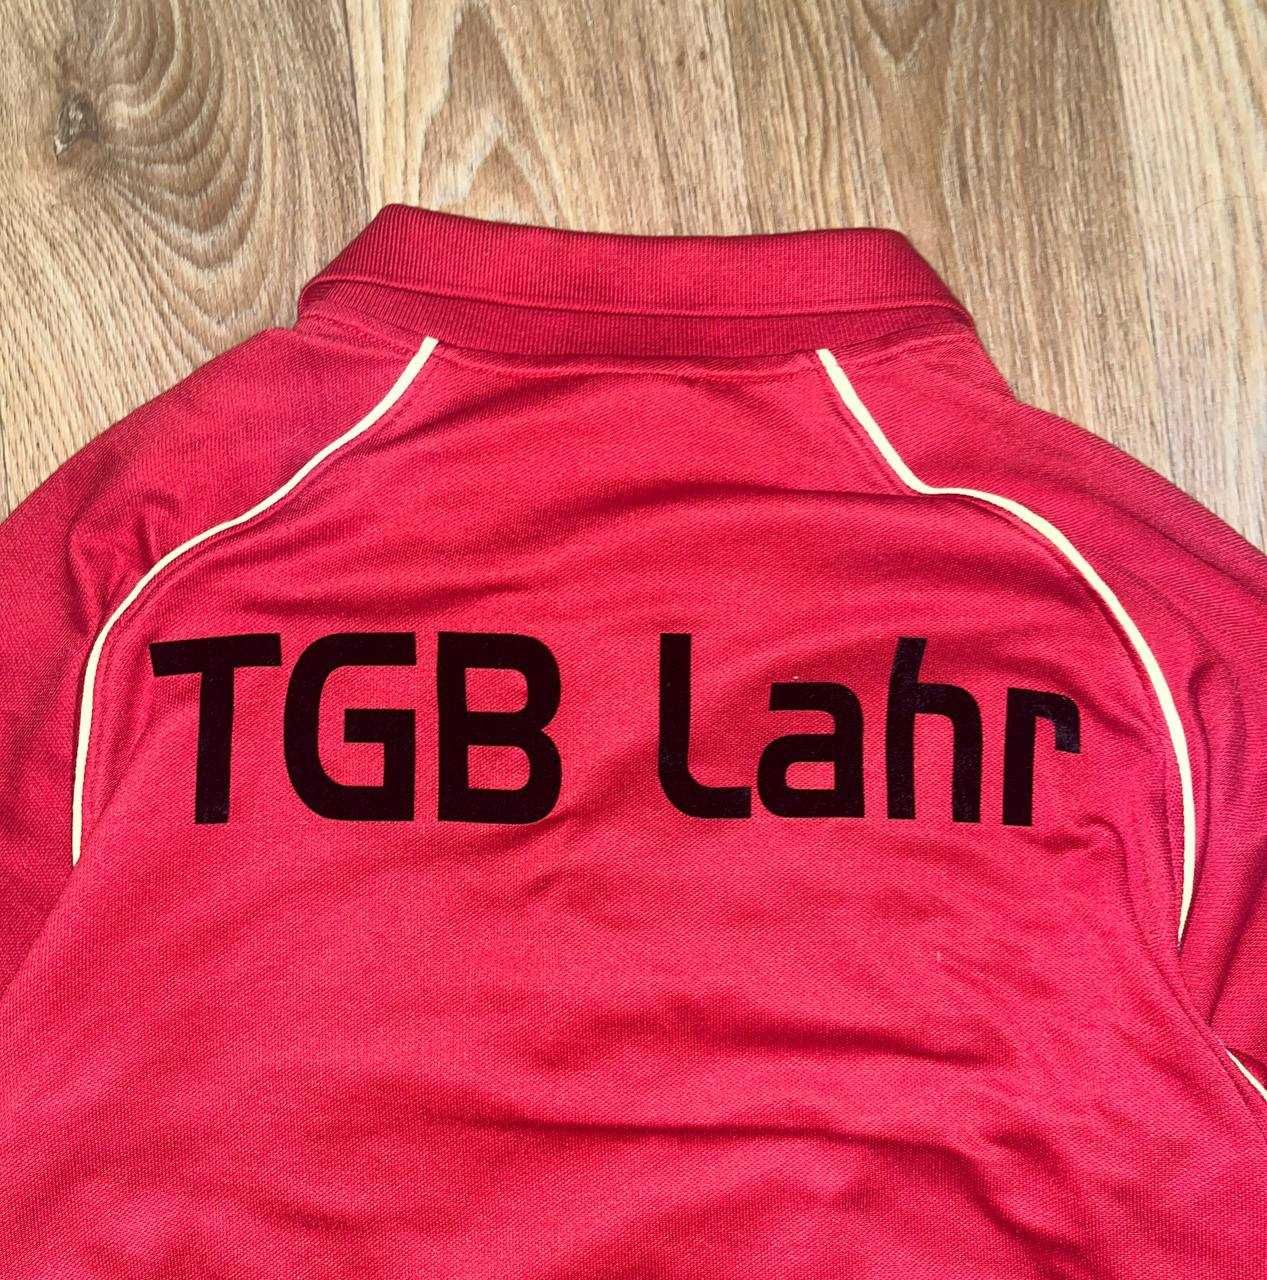 Оригінальна футболка Nike dri-fit TGB Lahr стан як нова